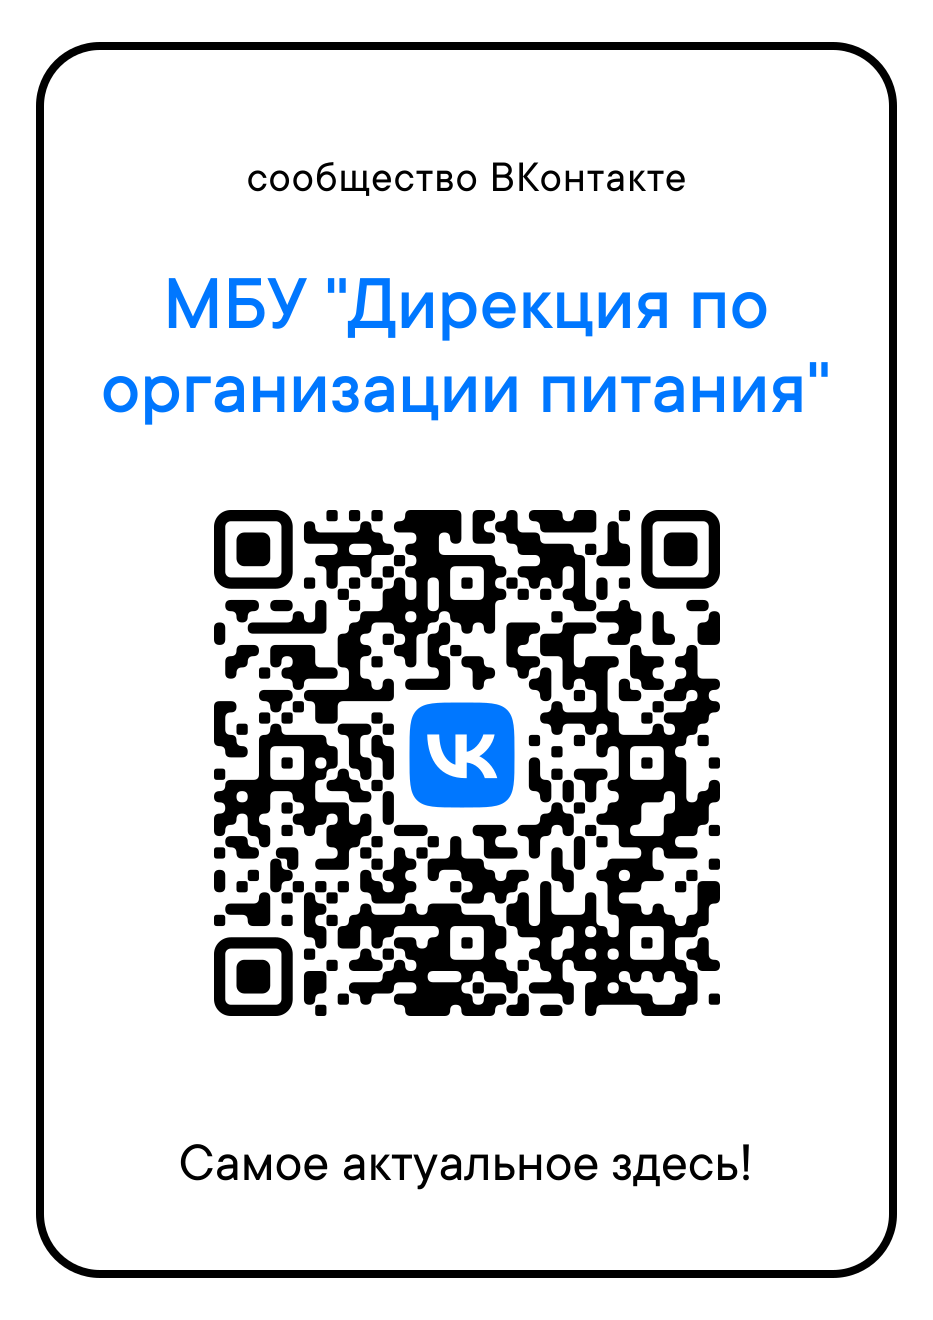 Дирекция по организации питания нижний. QR код организации. Пароли на приложения коды. Код Армении с мобильного. Информация о нас приложение.